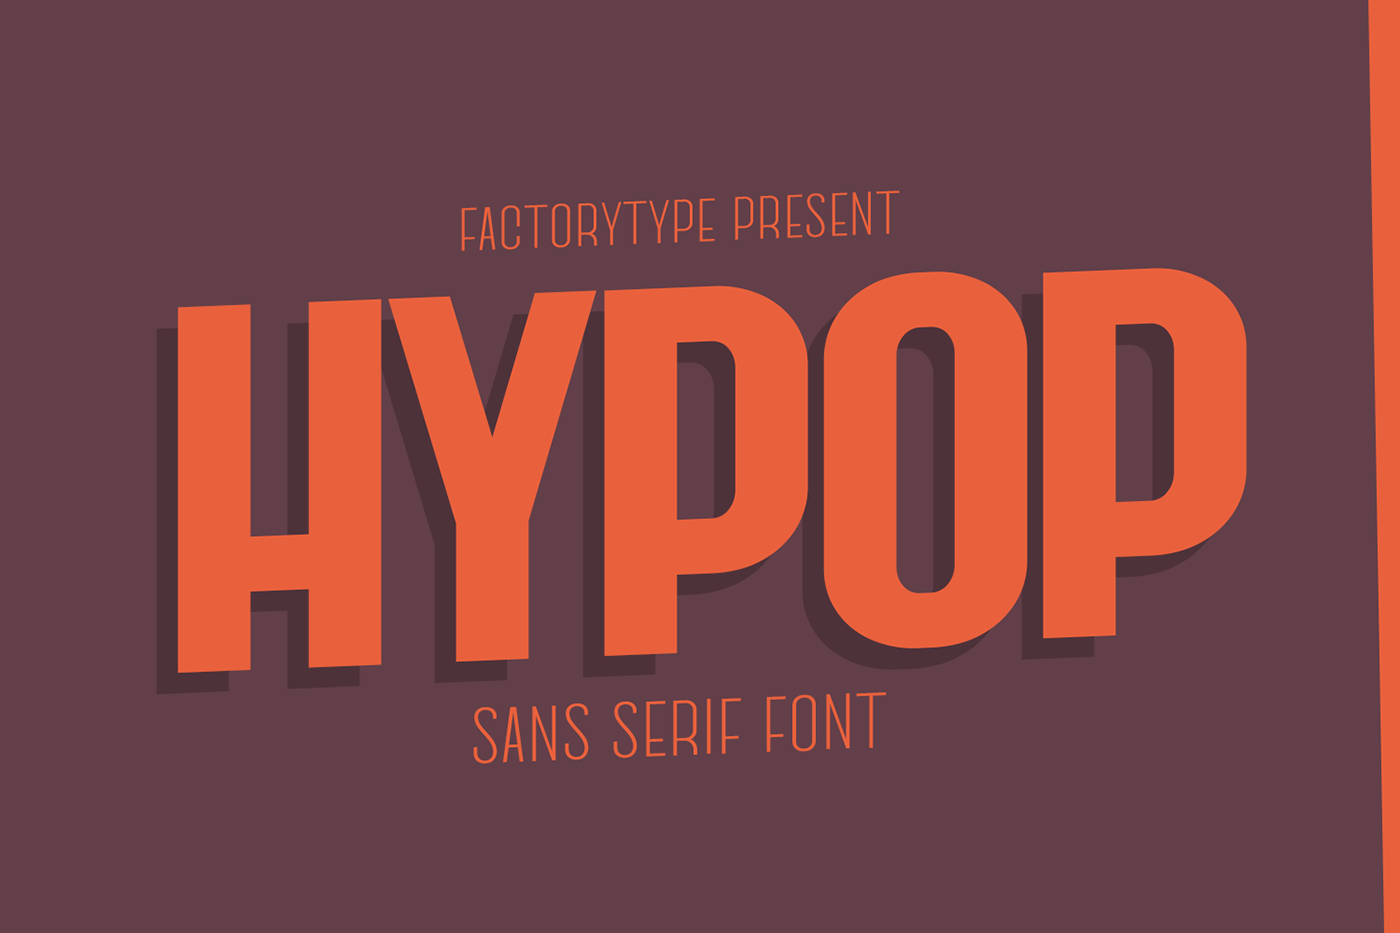 font font design fonts Free font lettering letters sans serif type Typeface